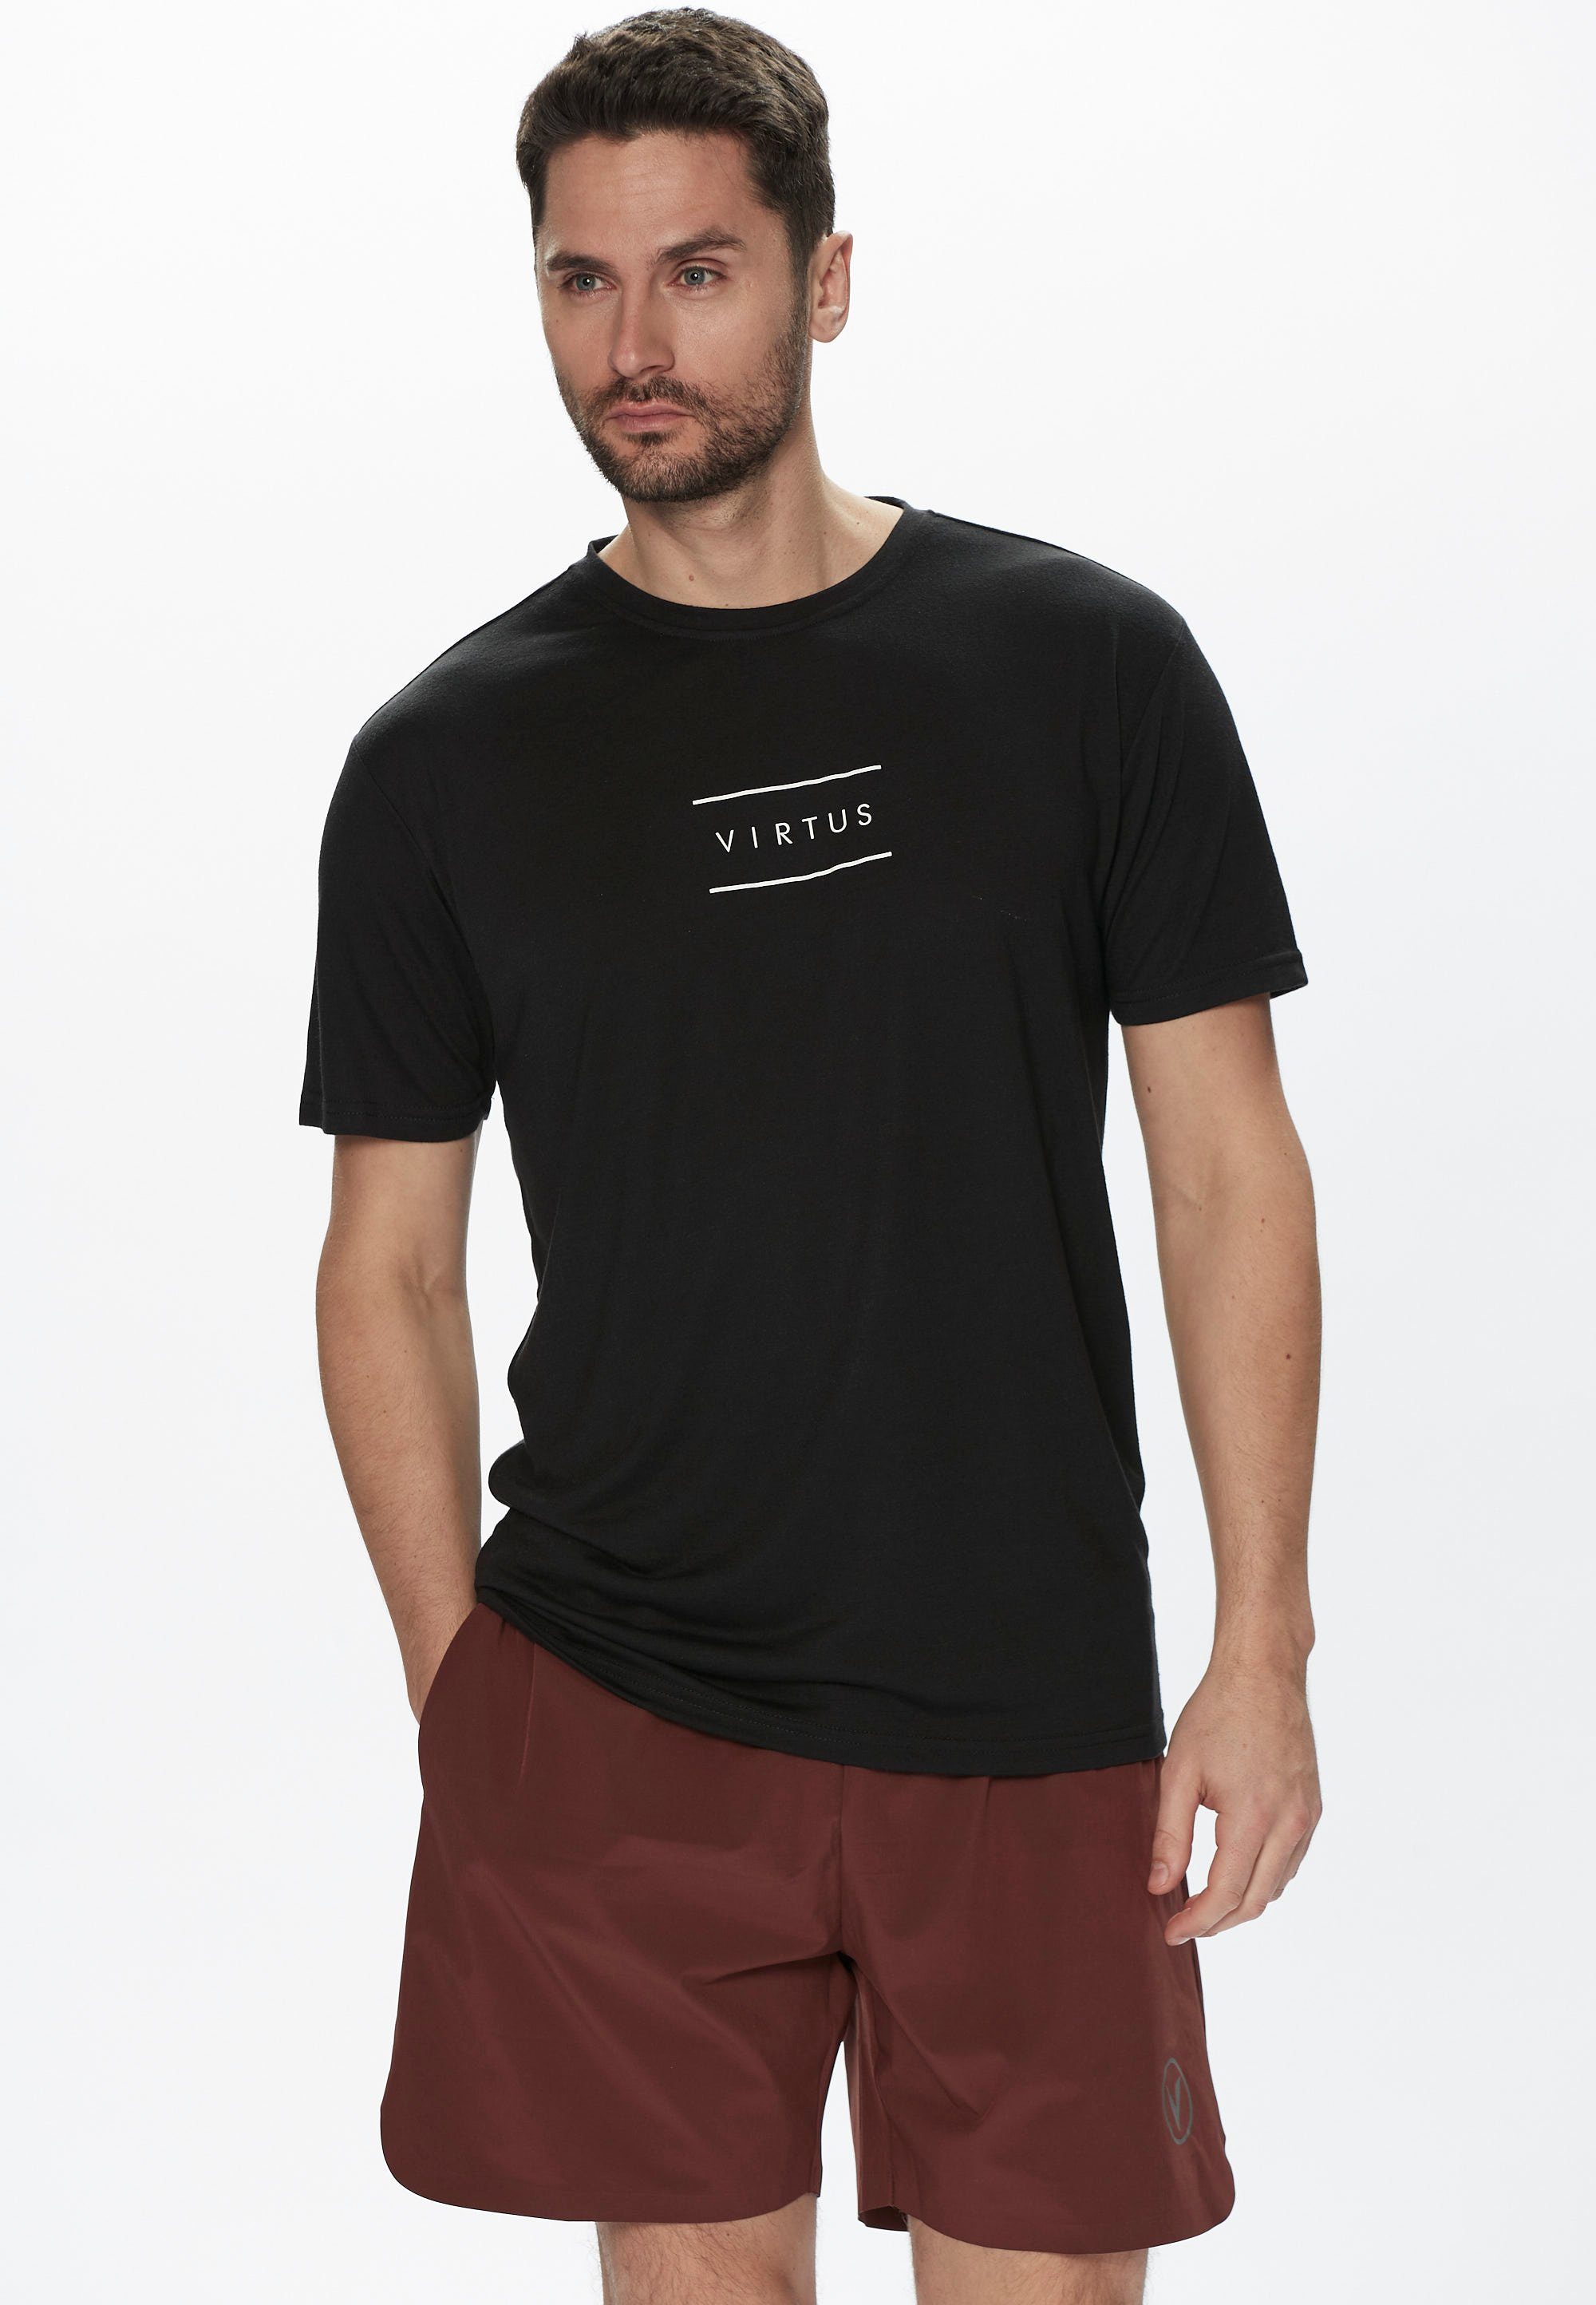 Virtus T-Shirt HODDIE Dänemark Herren S-S DRY für VIRTUS M von Funktionsshirt mit trocknender Technologie, Tee QUICK schnell aus